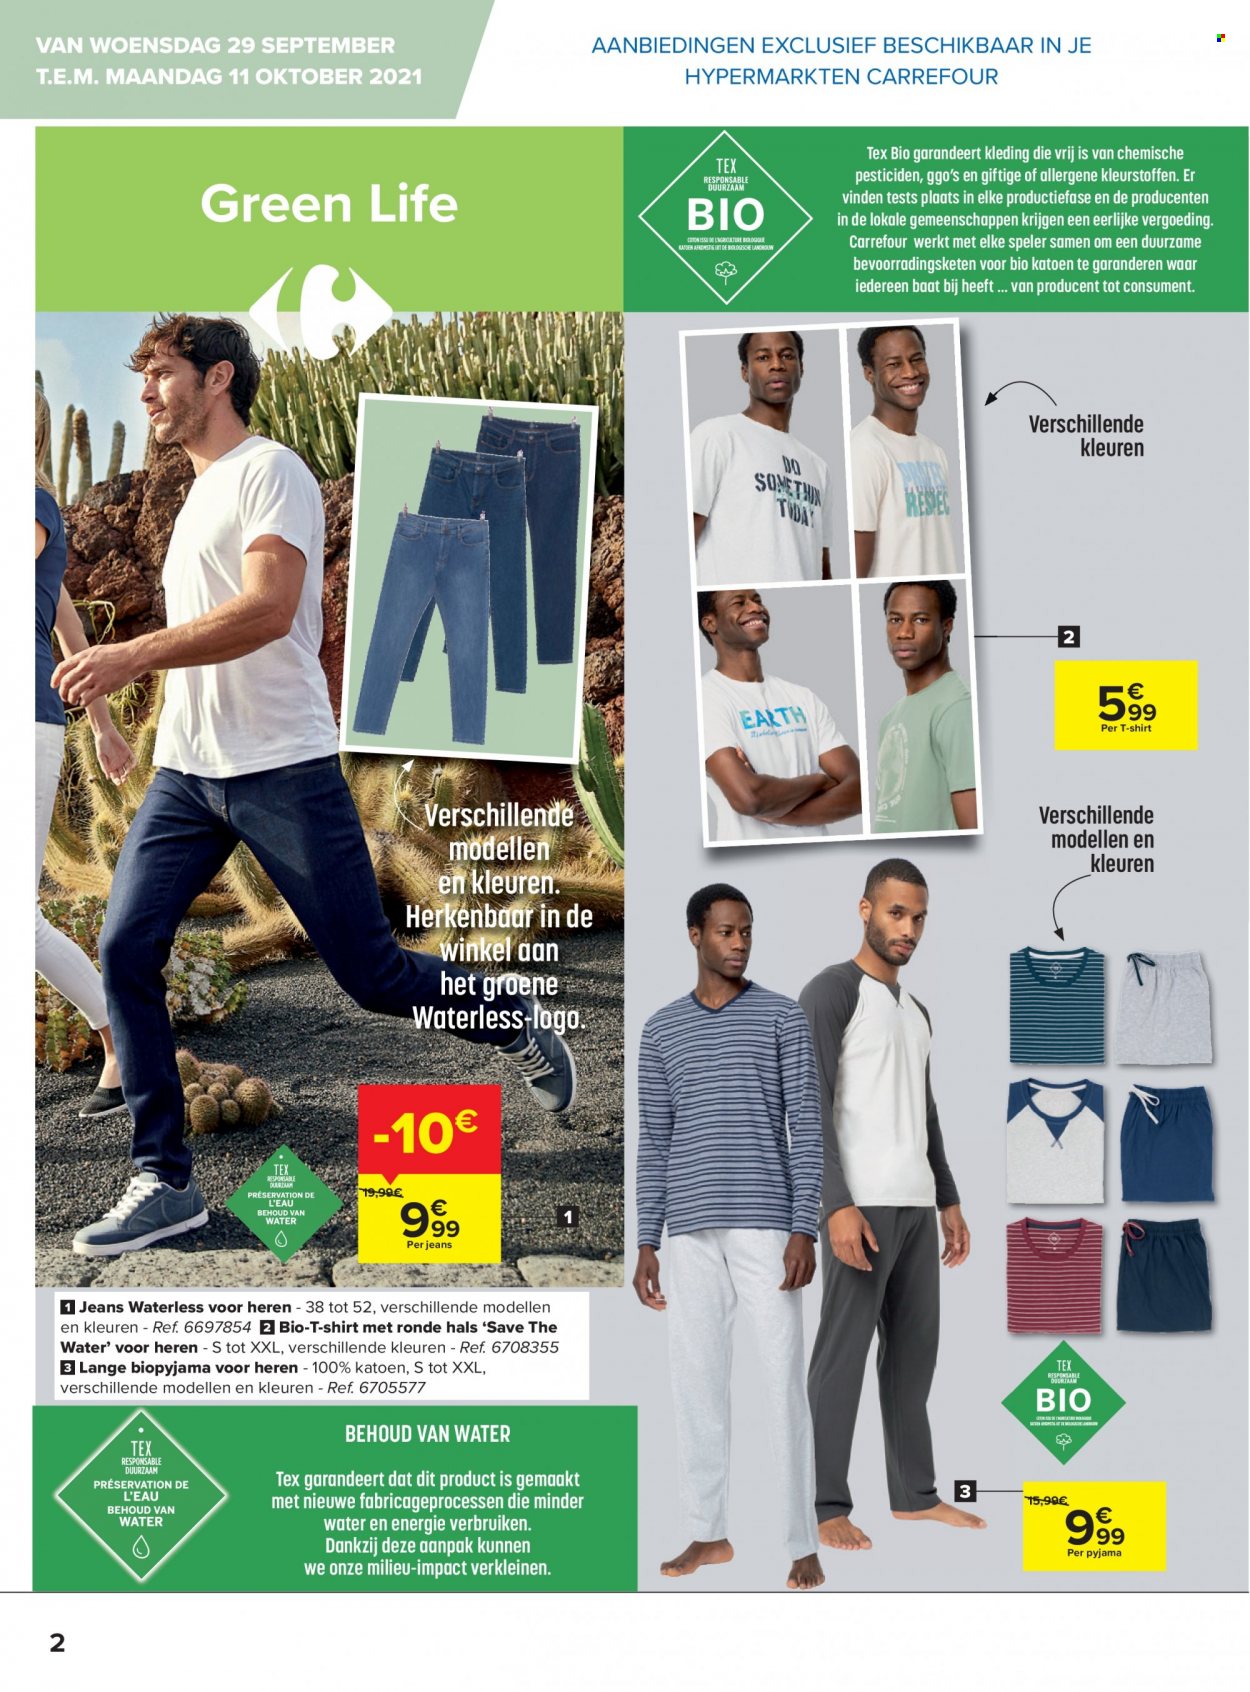 thumbnail - Catalogue Carrefour hypermarkt - 29/09/2021 - 11/10/2021 - Produits soldés - jeans, t-shirt, pyjama. Page 2.